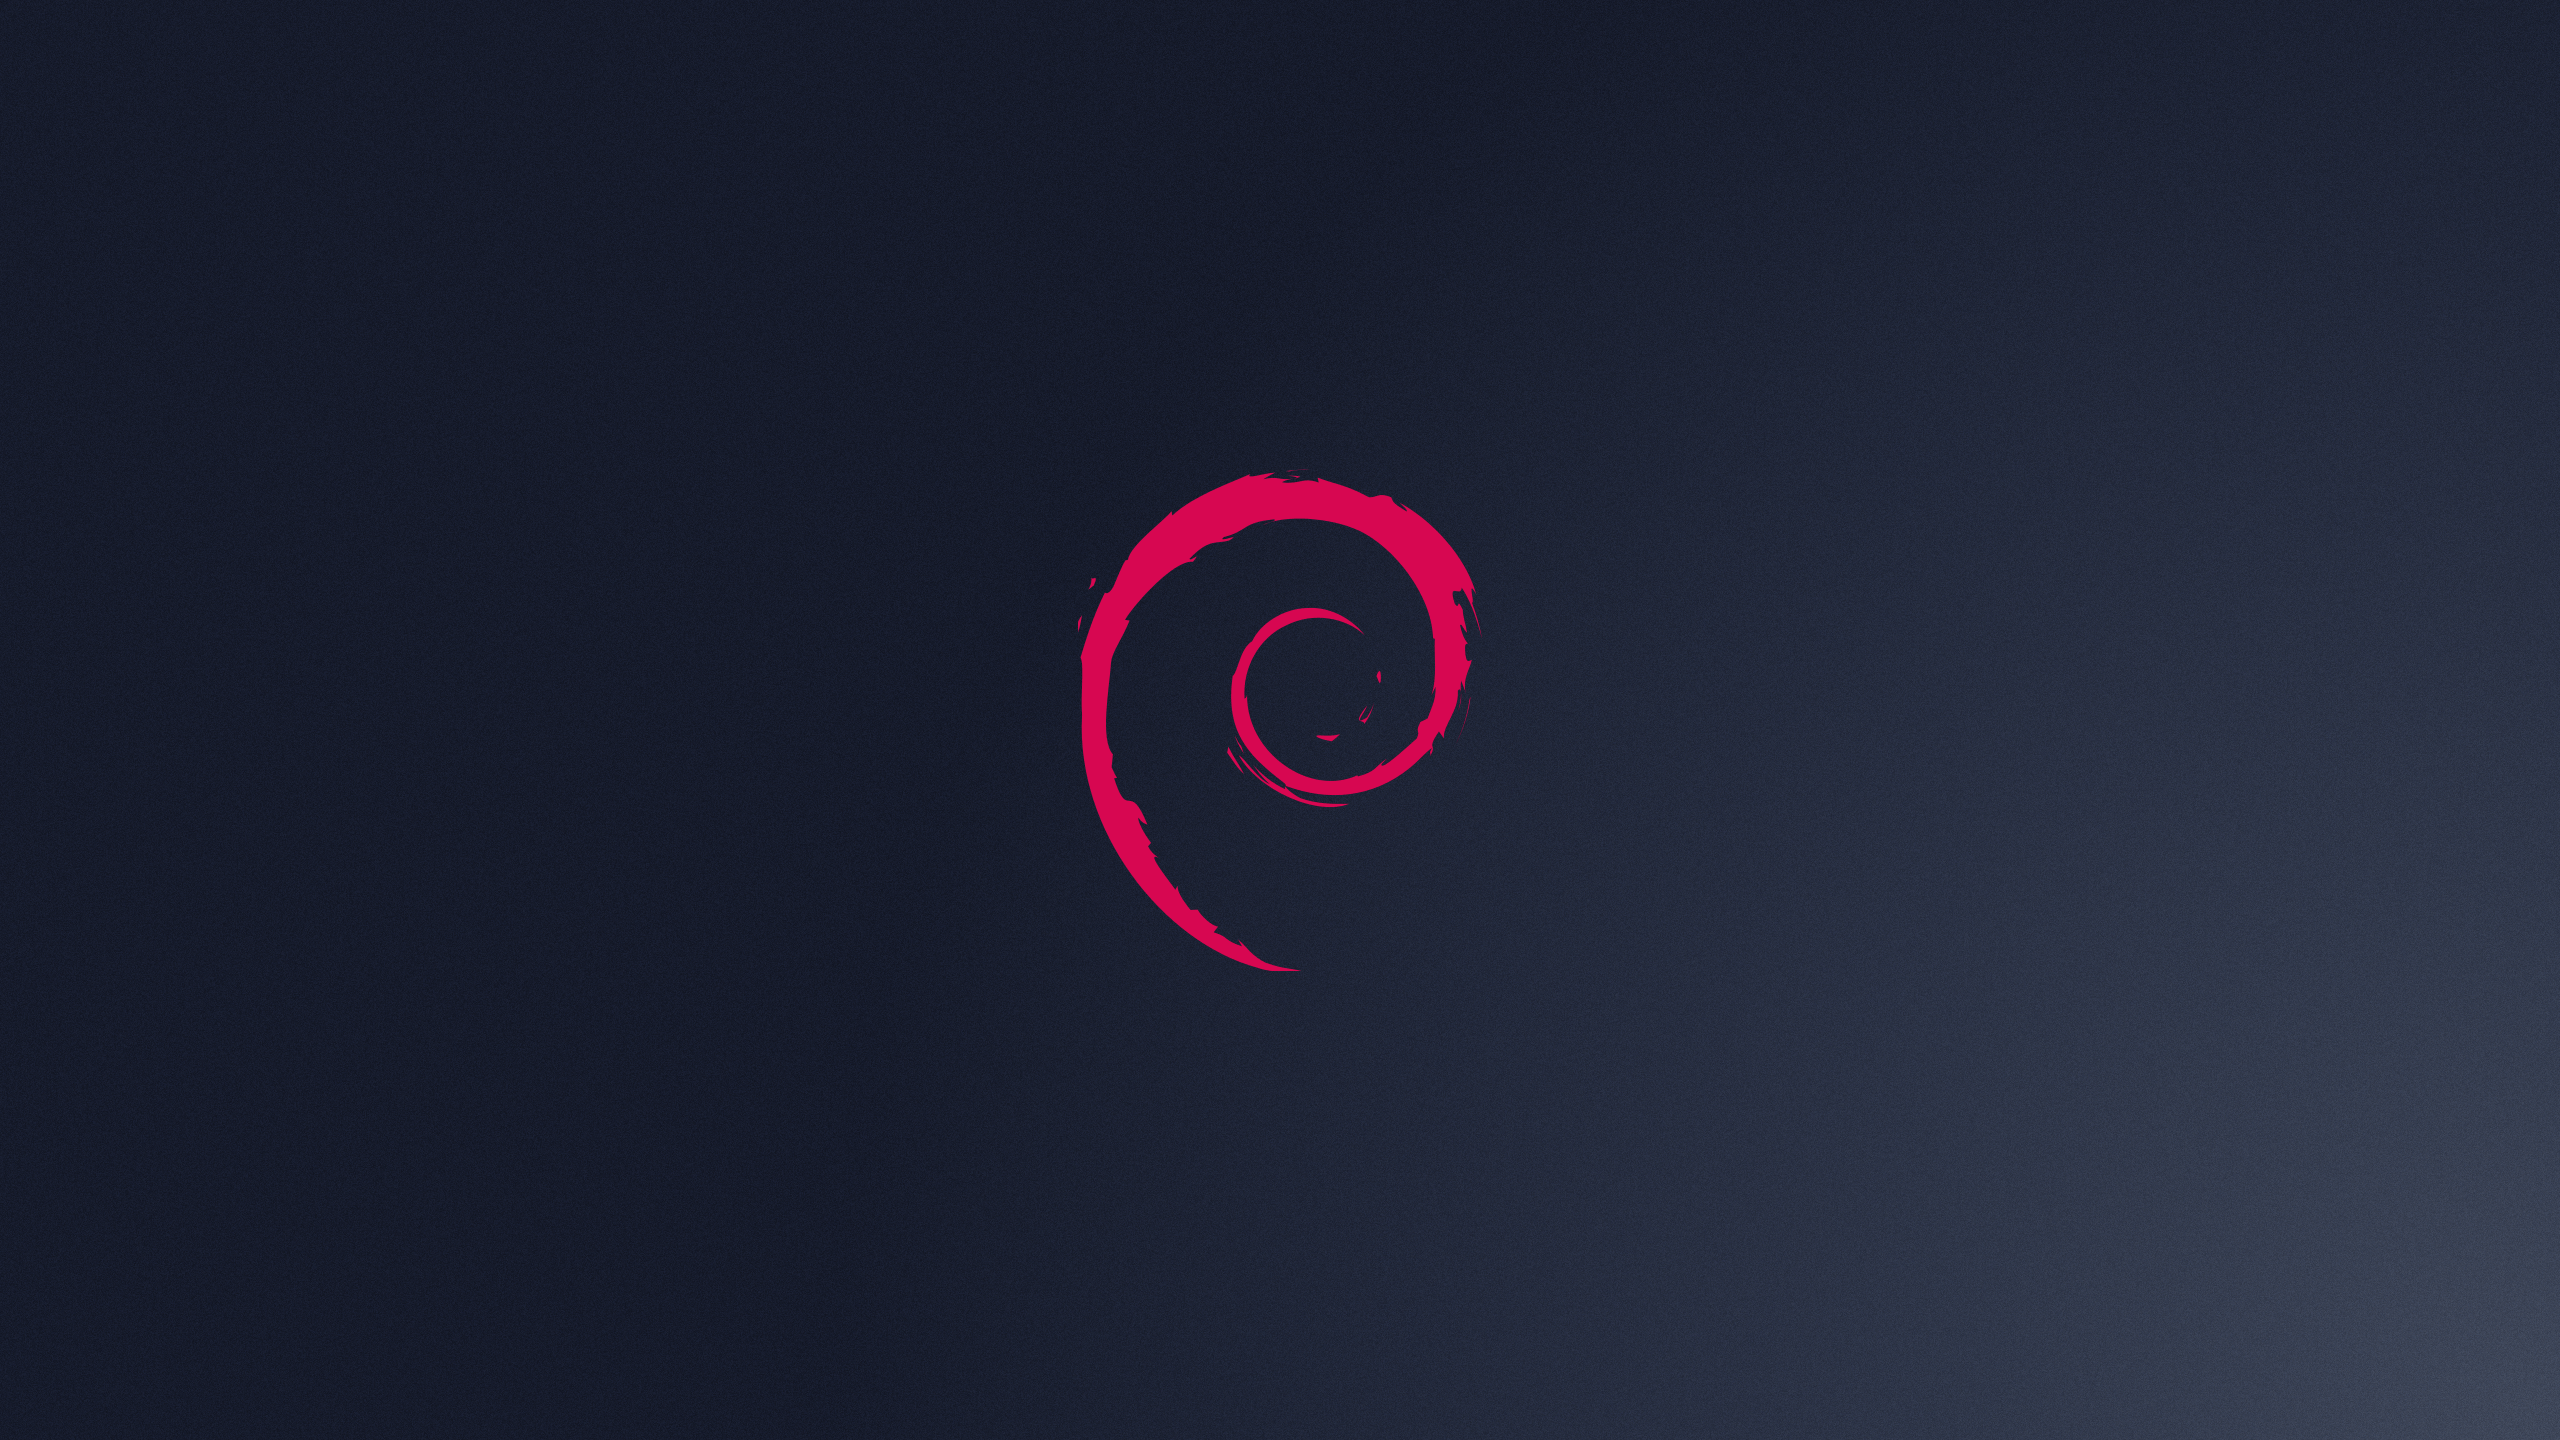 Free Debian Logo Wallpaper 40685 2560x1440 px